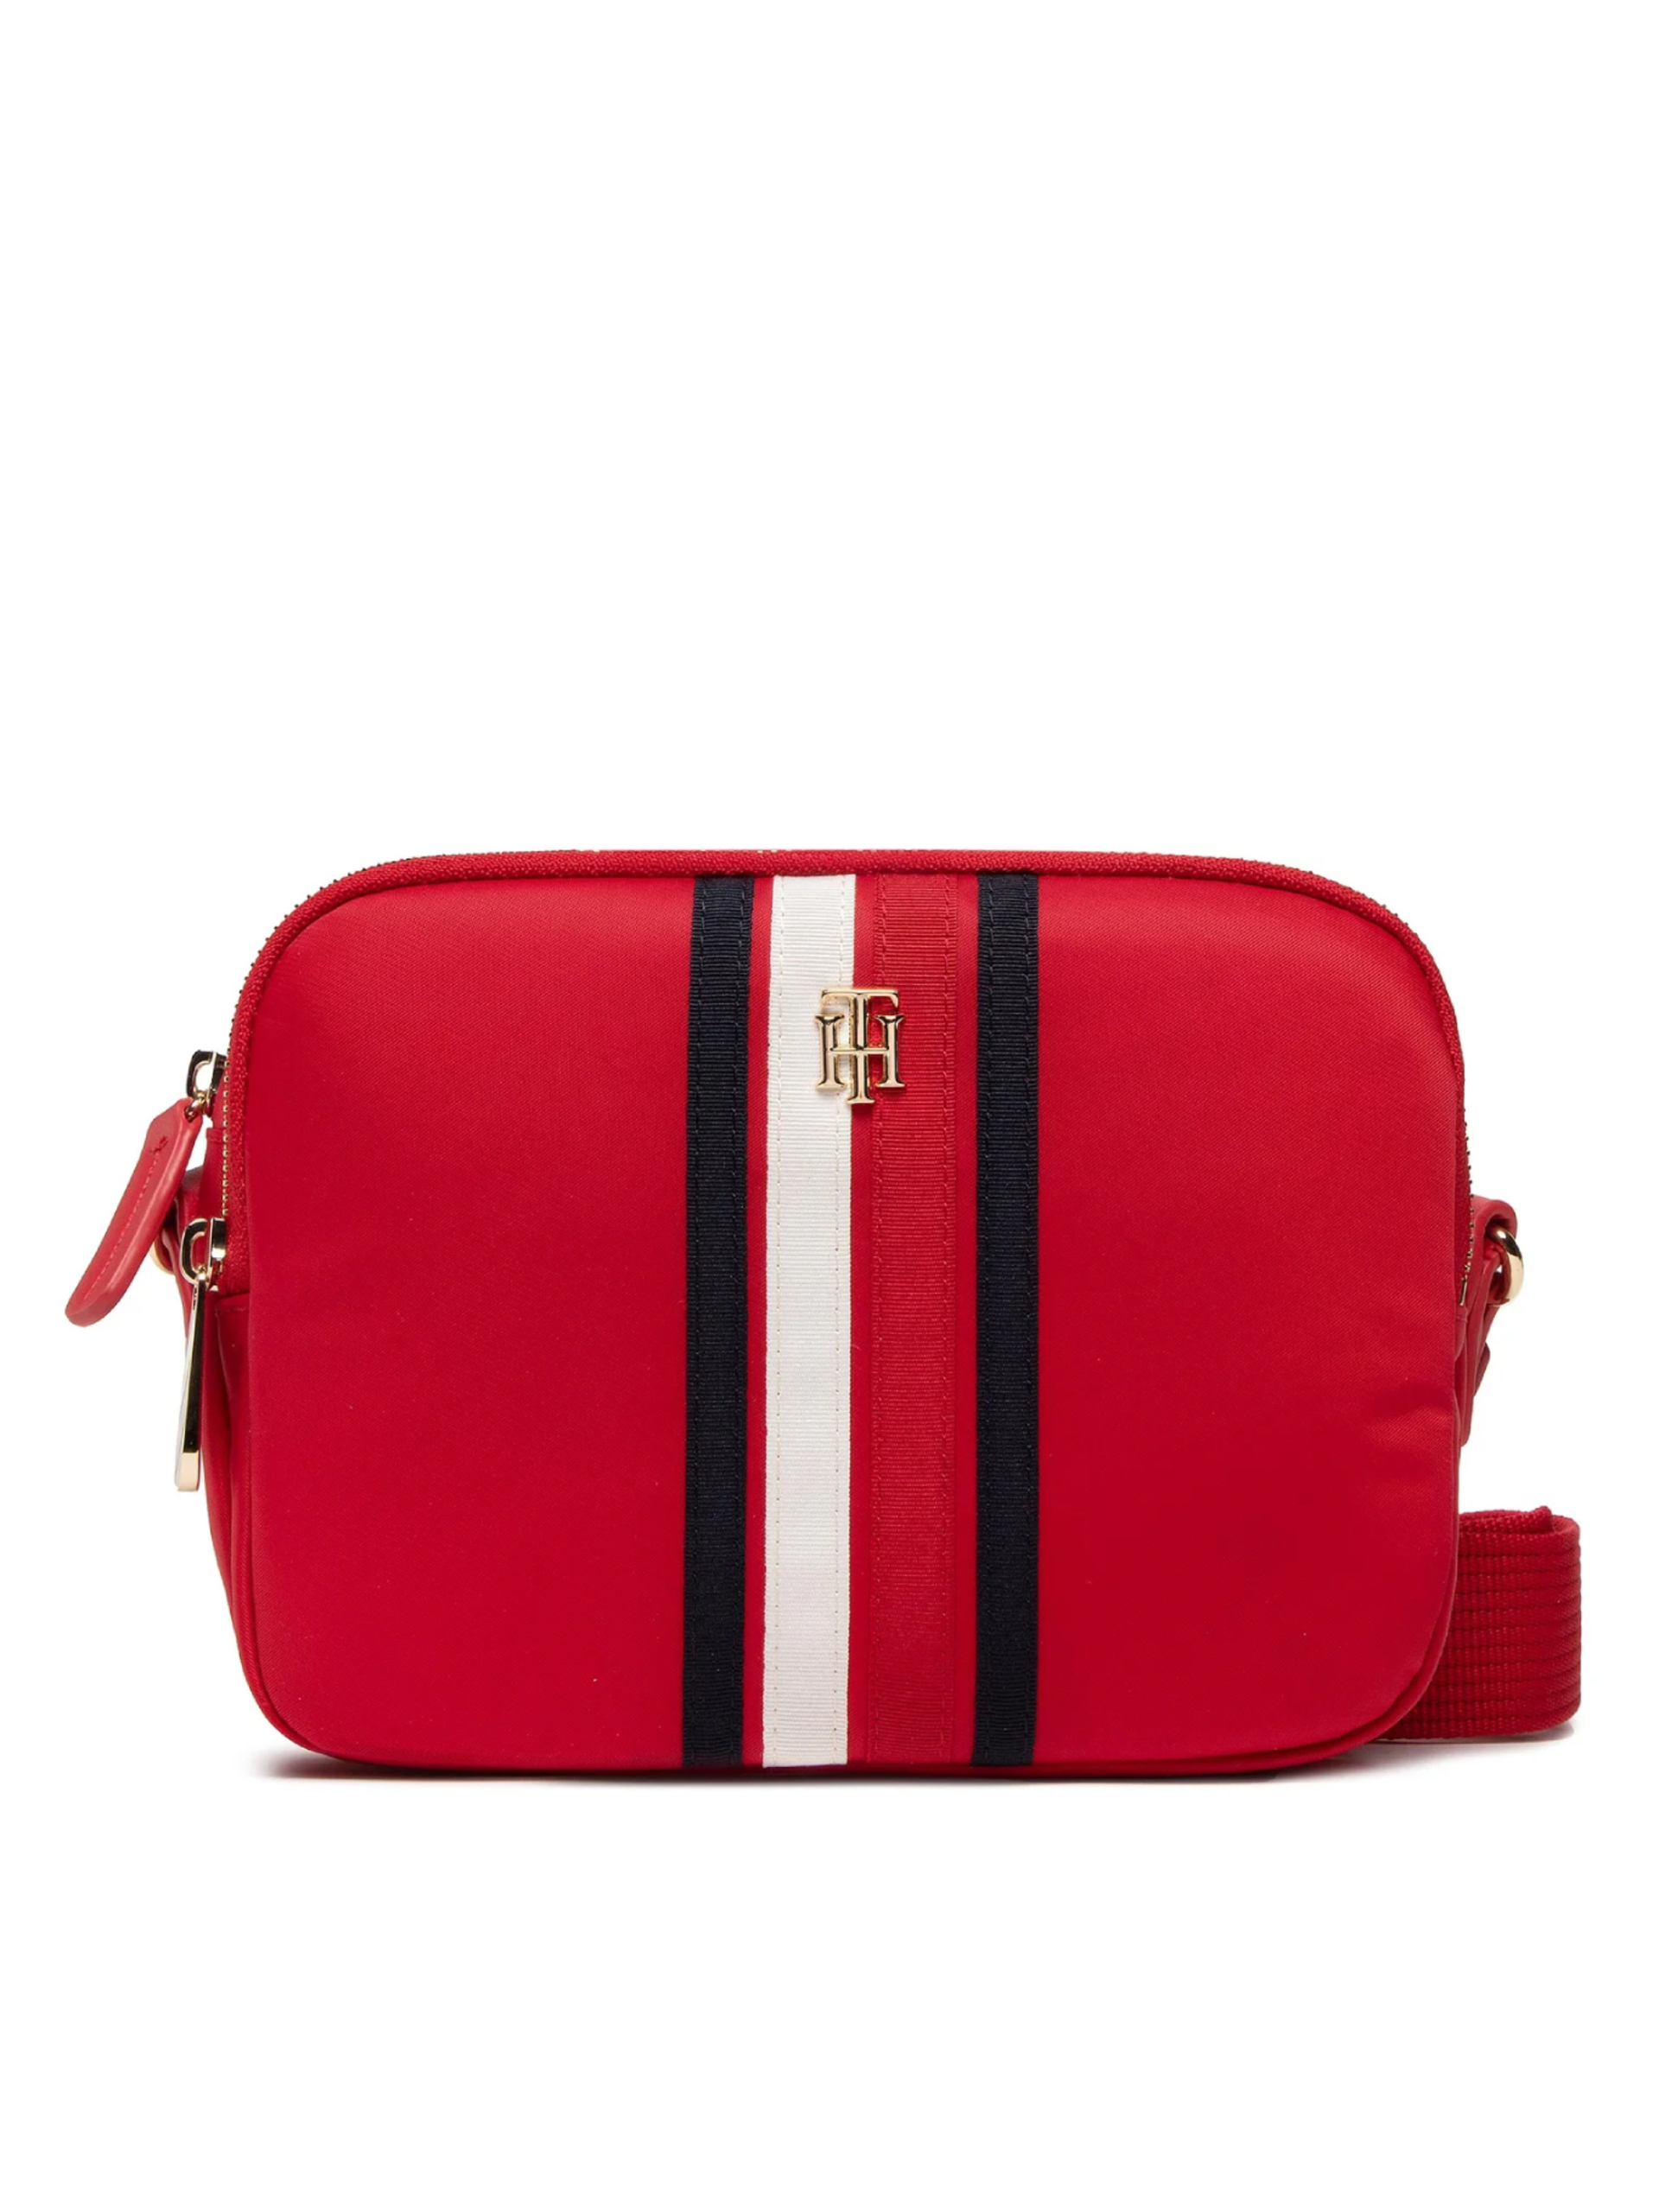 Tommy Hilfiger dámská červená kabelka - OS (XLG)